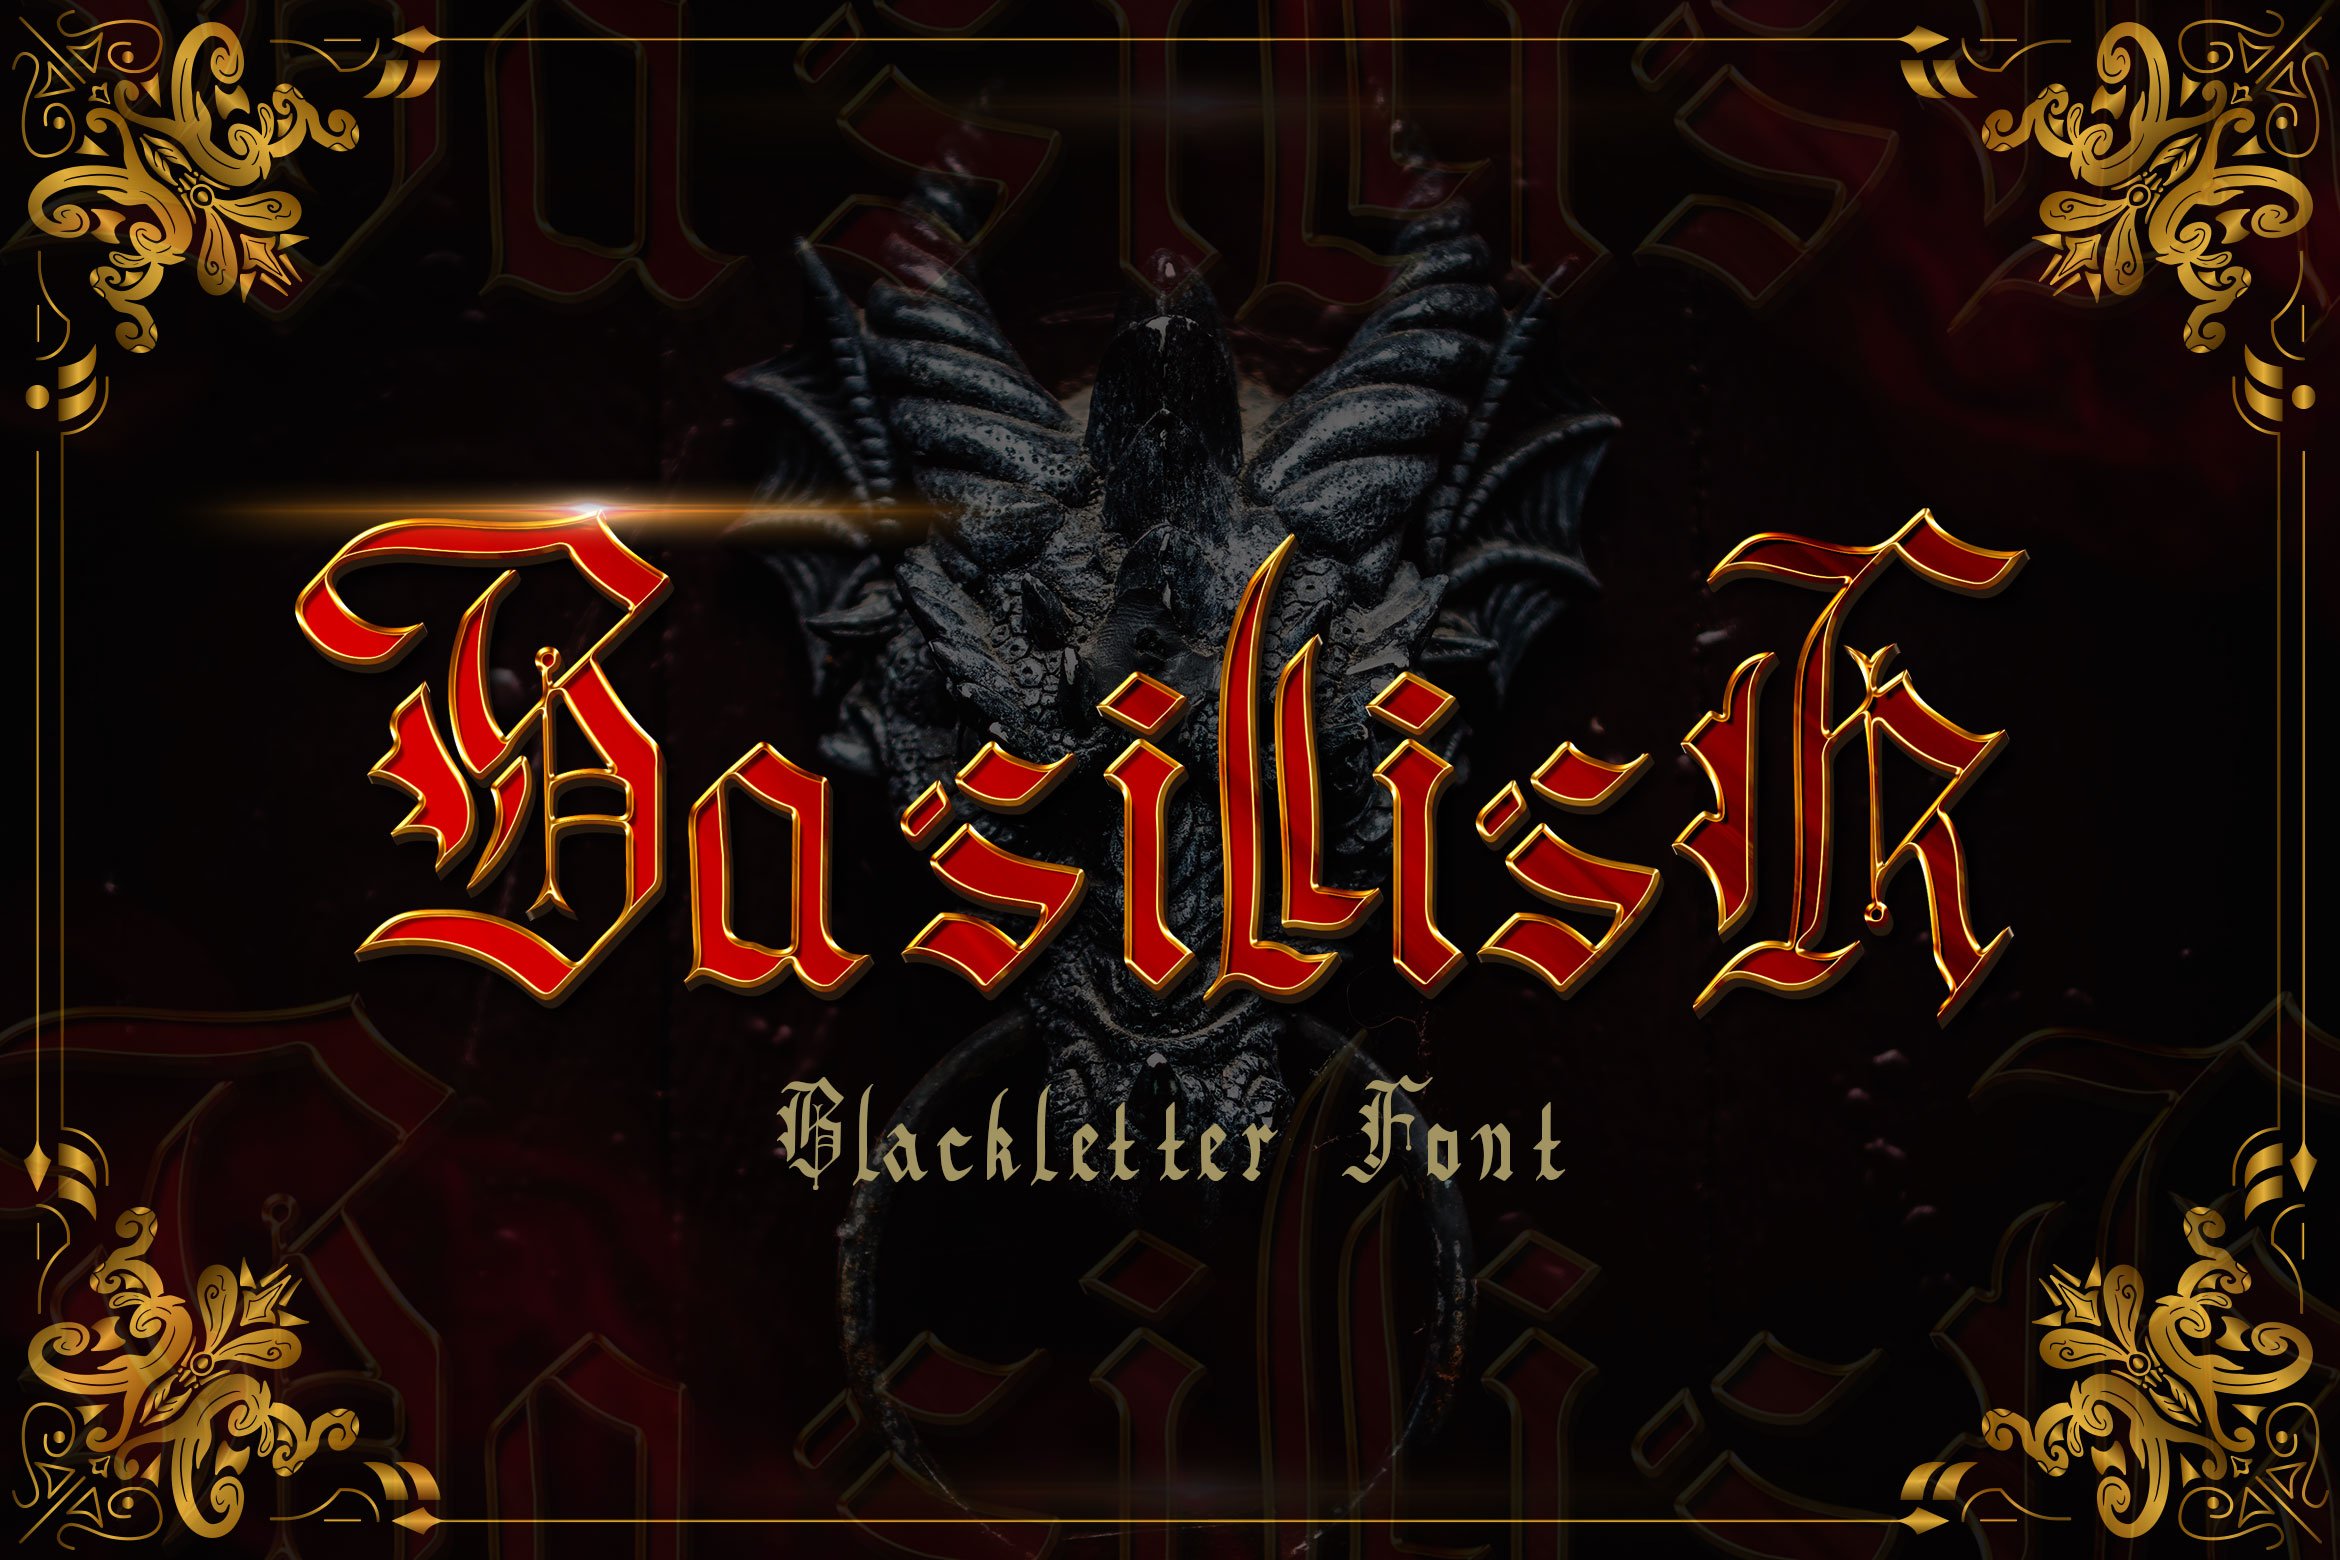 Basillisk - Blackletter Font cover image.